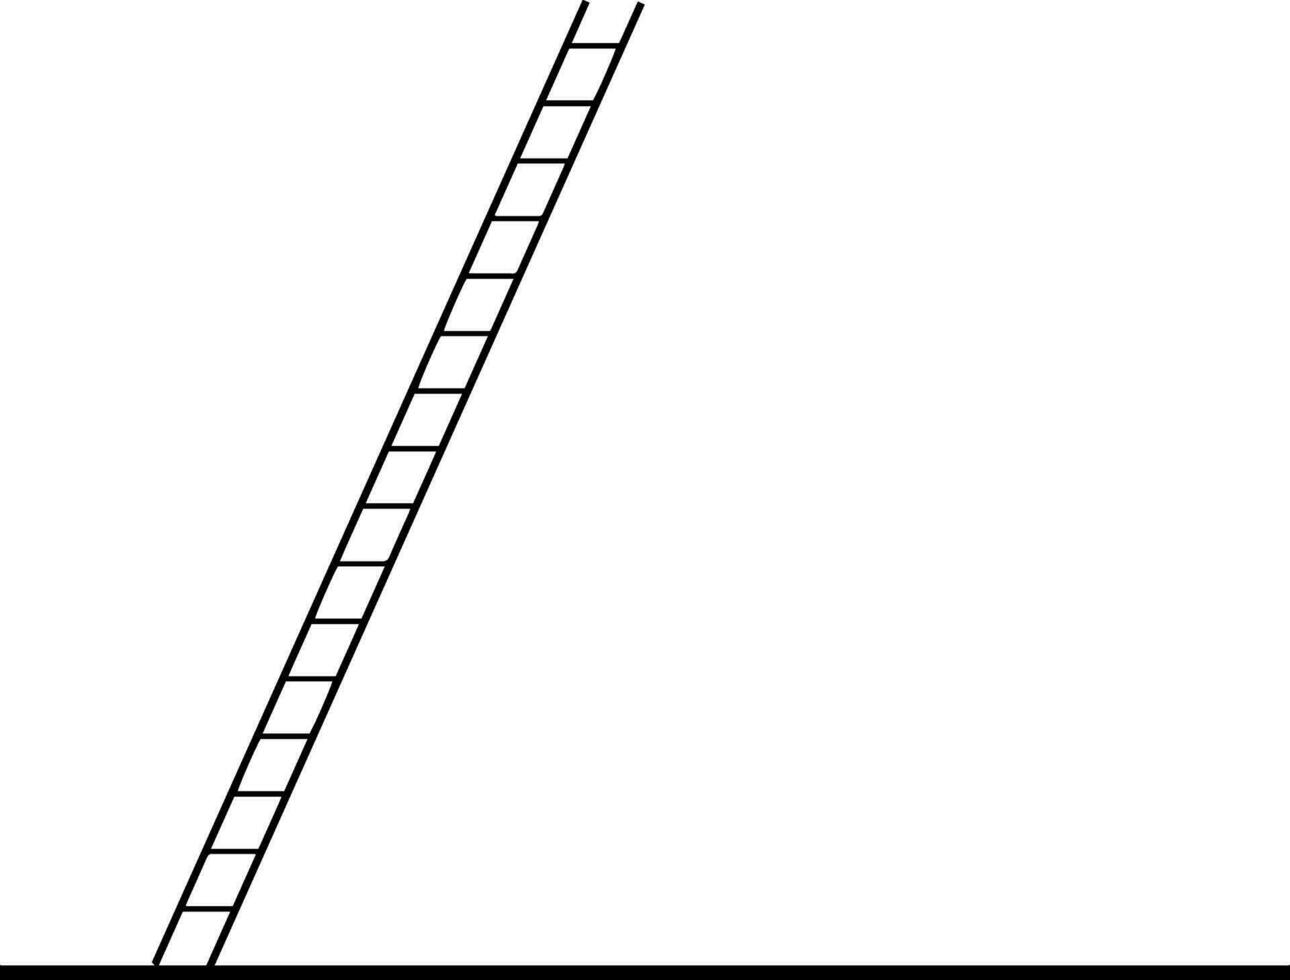 Leaning Ladder vintage illustration. vector